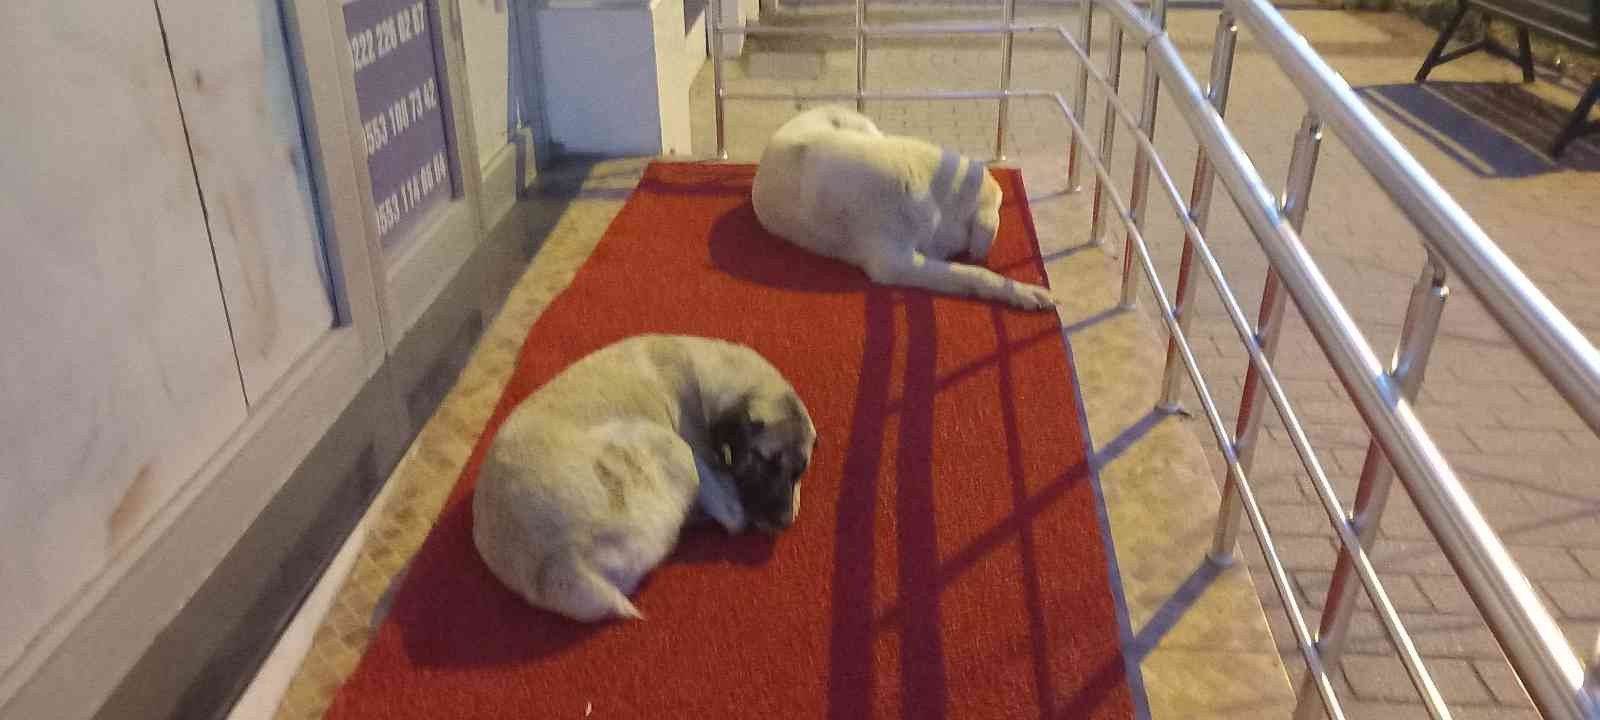 Vişnelik Aile Sağlığı Merkezi önünde sevimli köpekler geceleri nöbet bekliyor